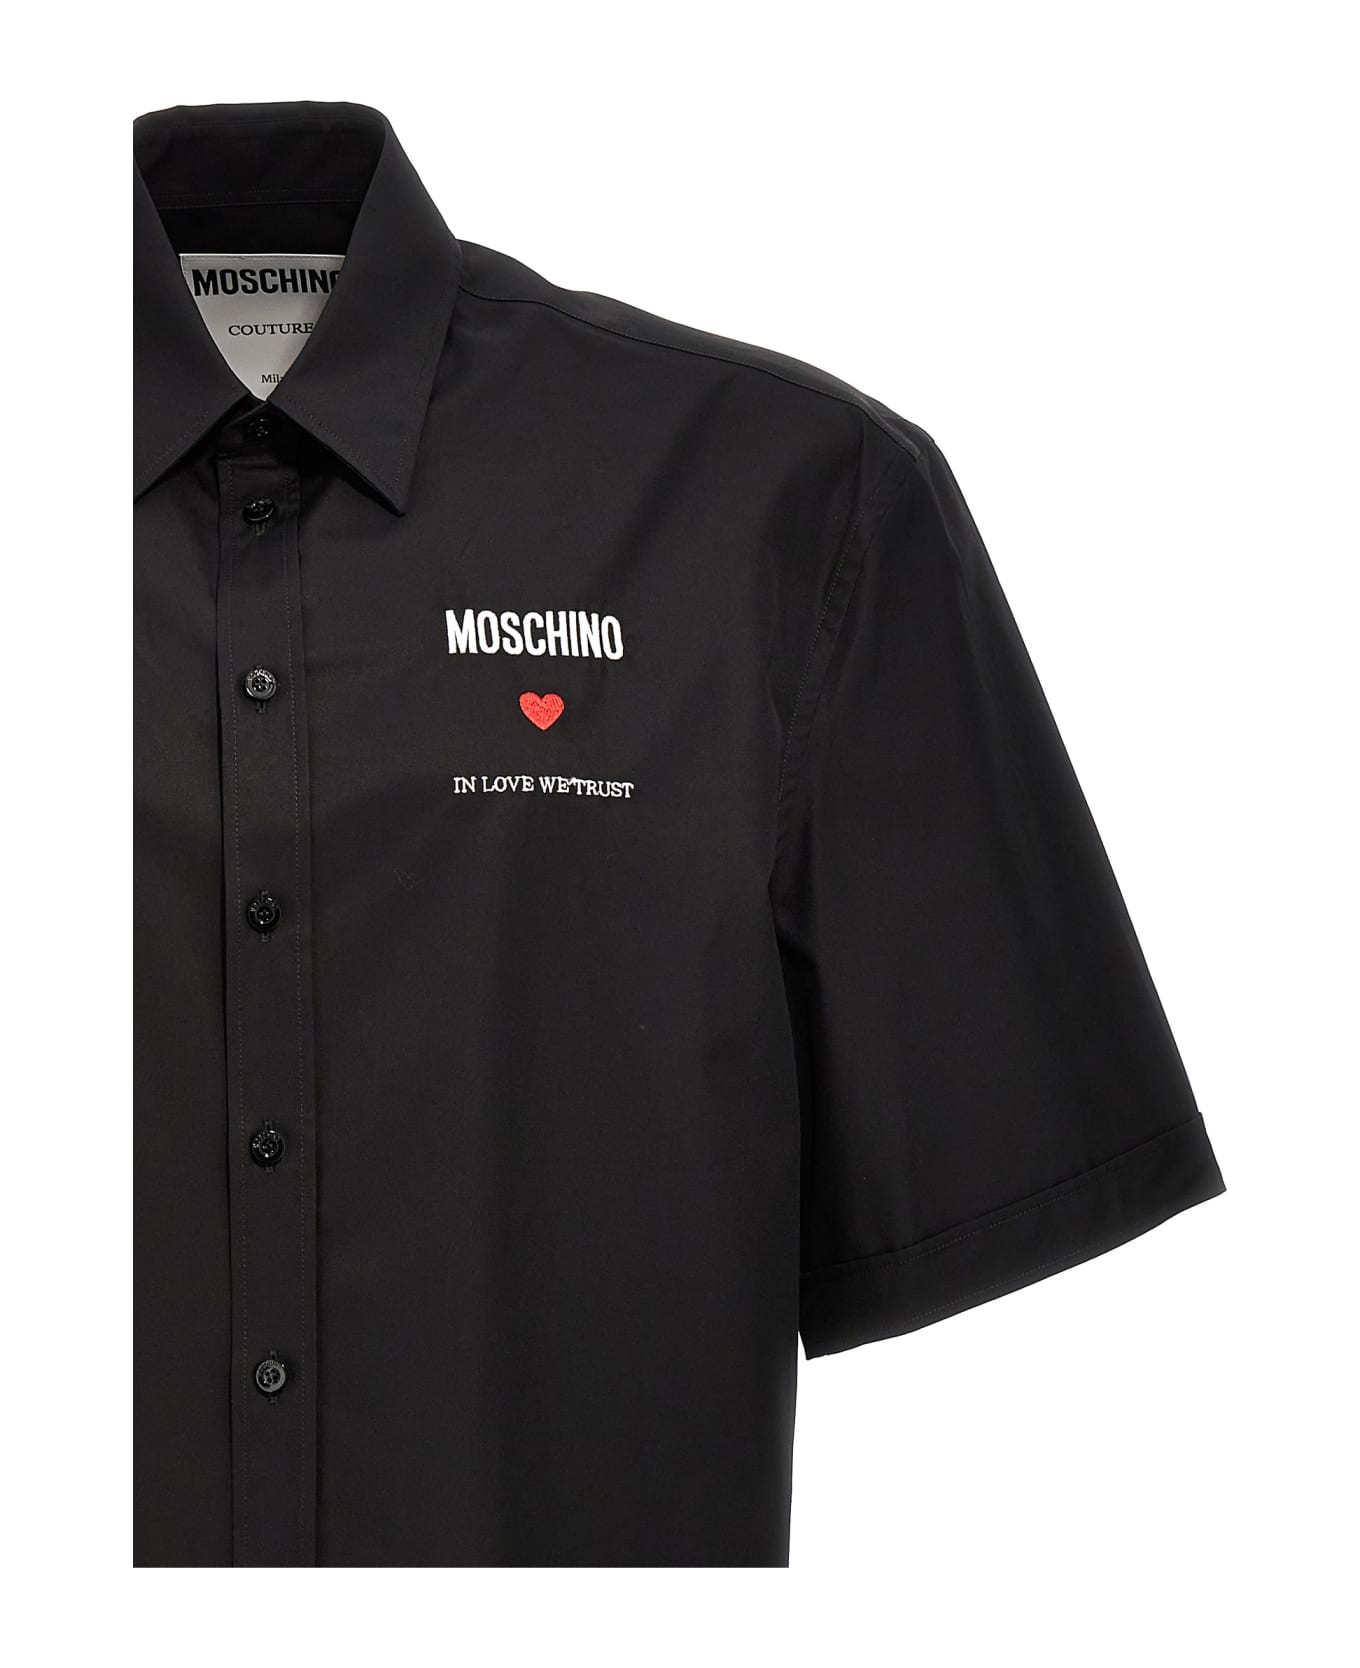 Moschino 'in Love We Trust' Shirt - Black  